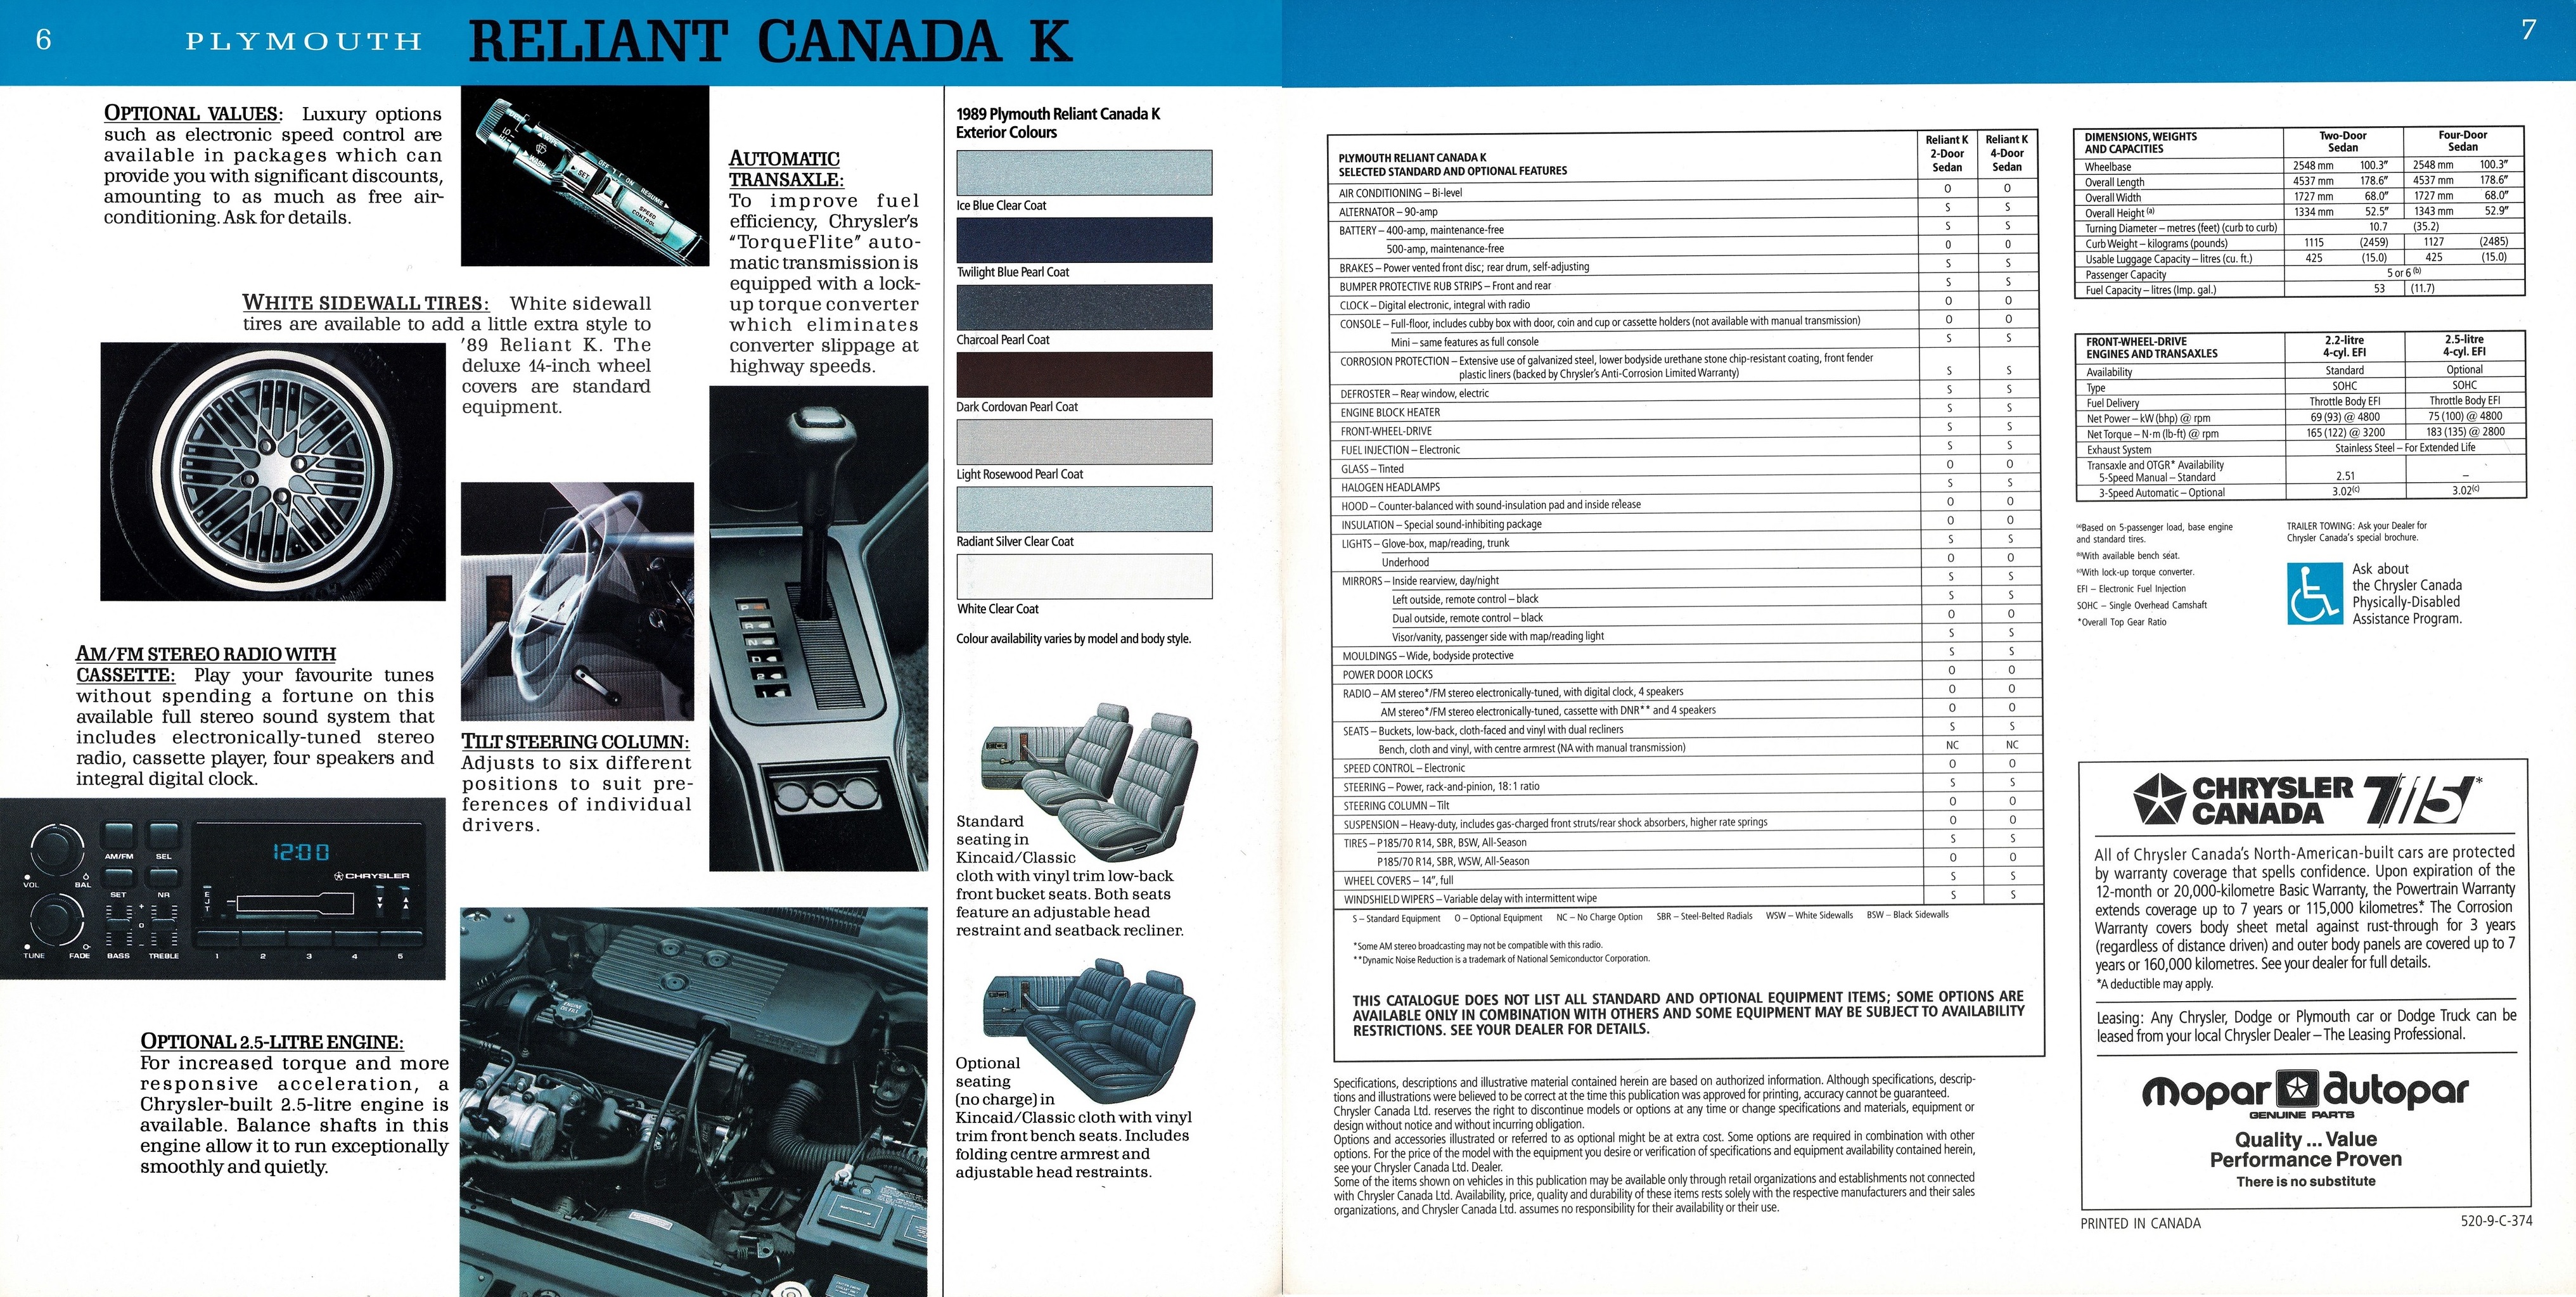 1981 Plymouth Reliant Canada K Brochure 06-07